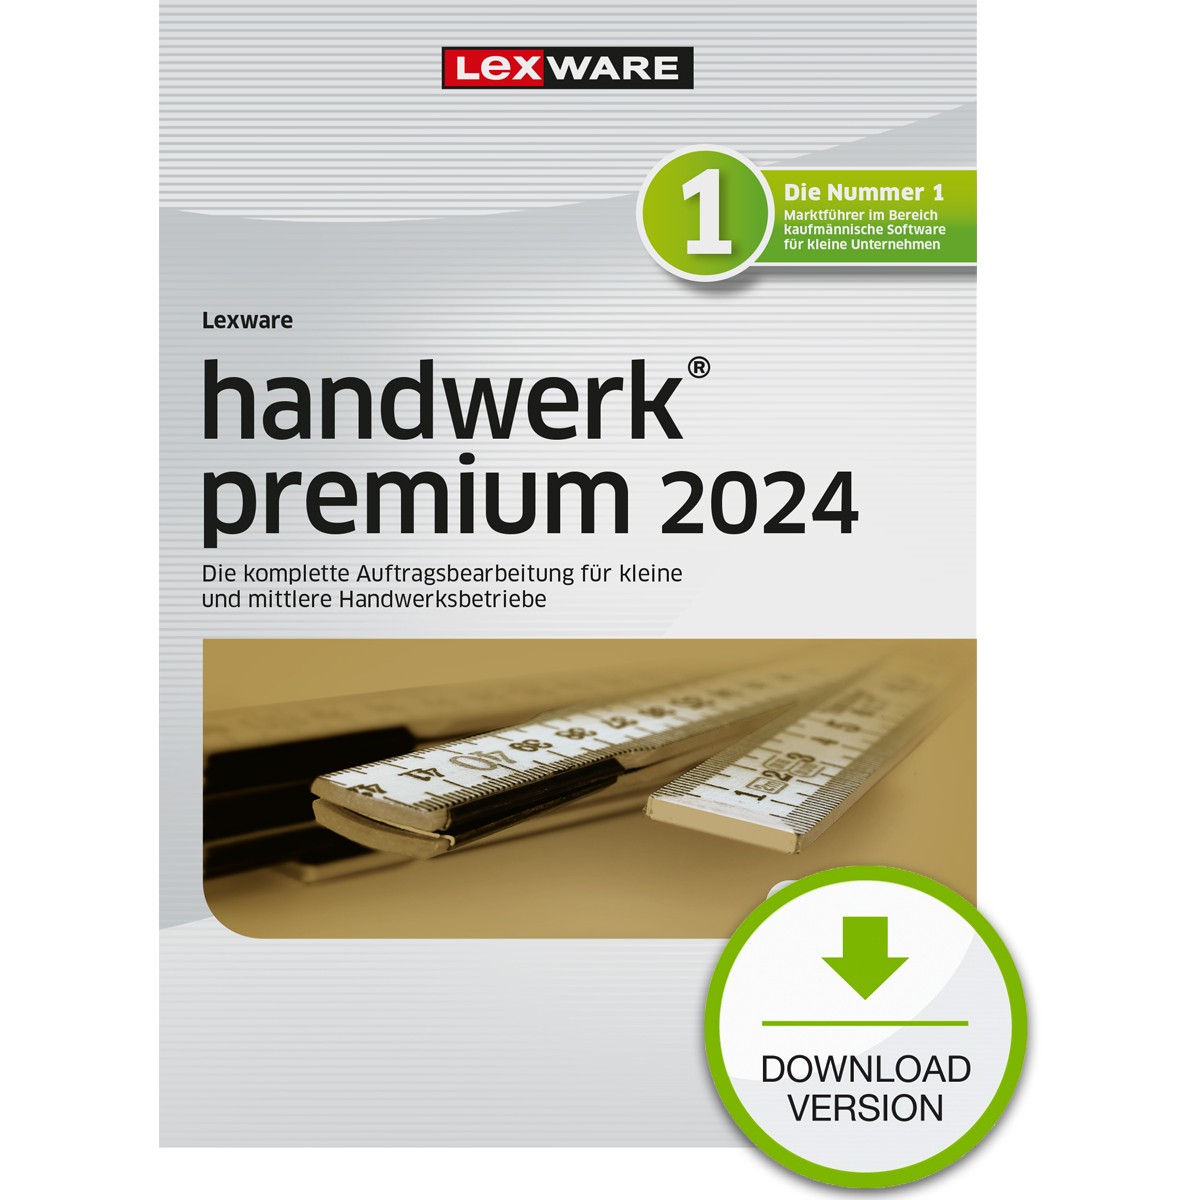 LEXWARE handwerk premium 2024 - Abo [Download]